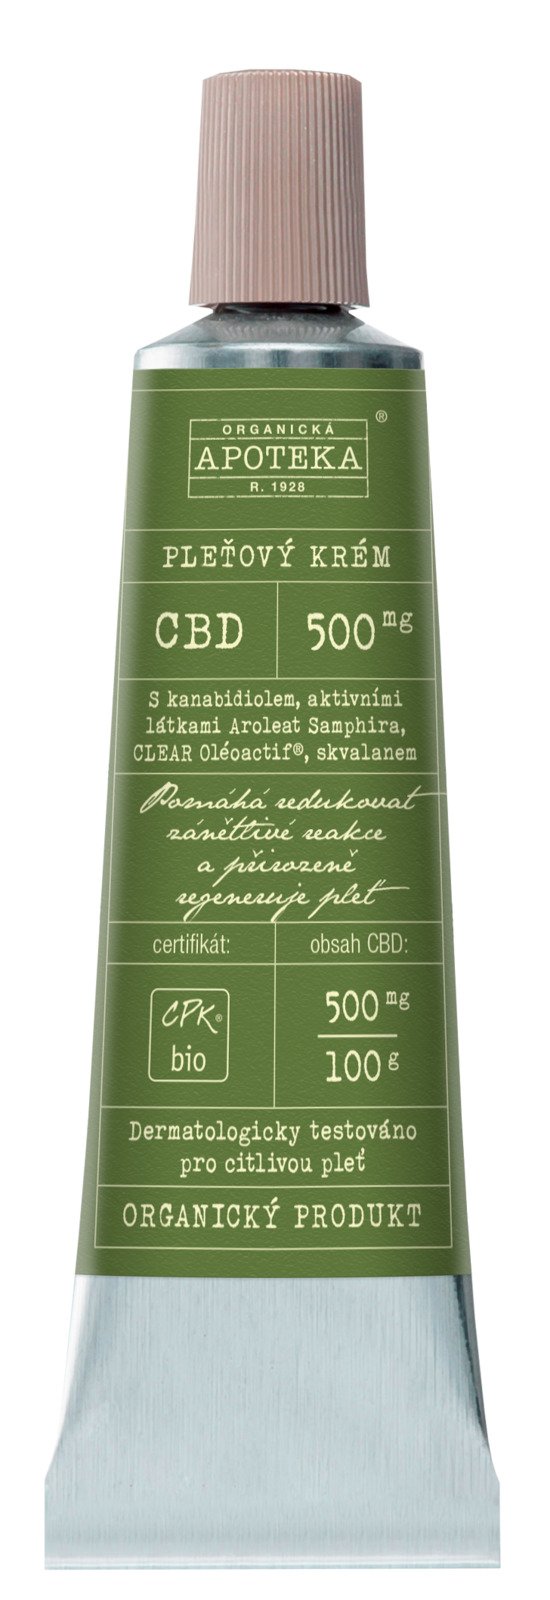 Pleťový krém s CBD, Organická apotéka, 873 Kč (30 ml)